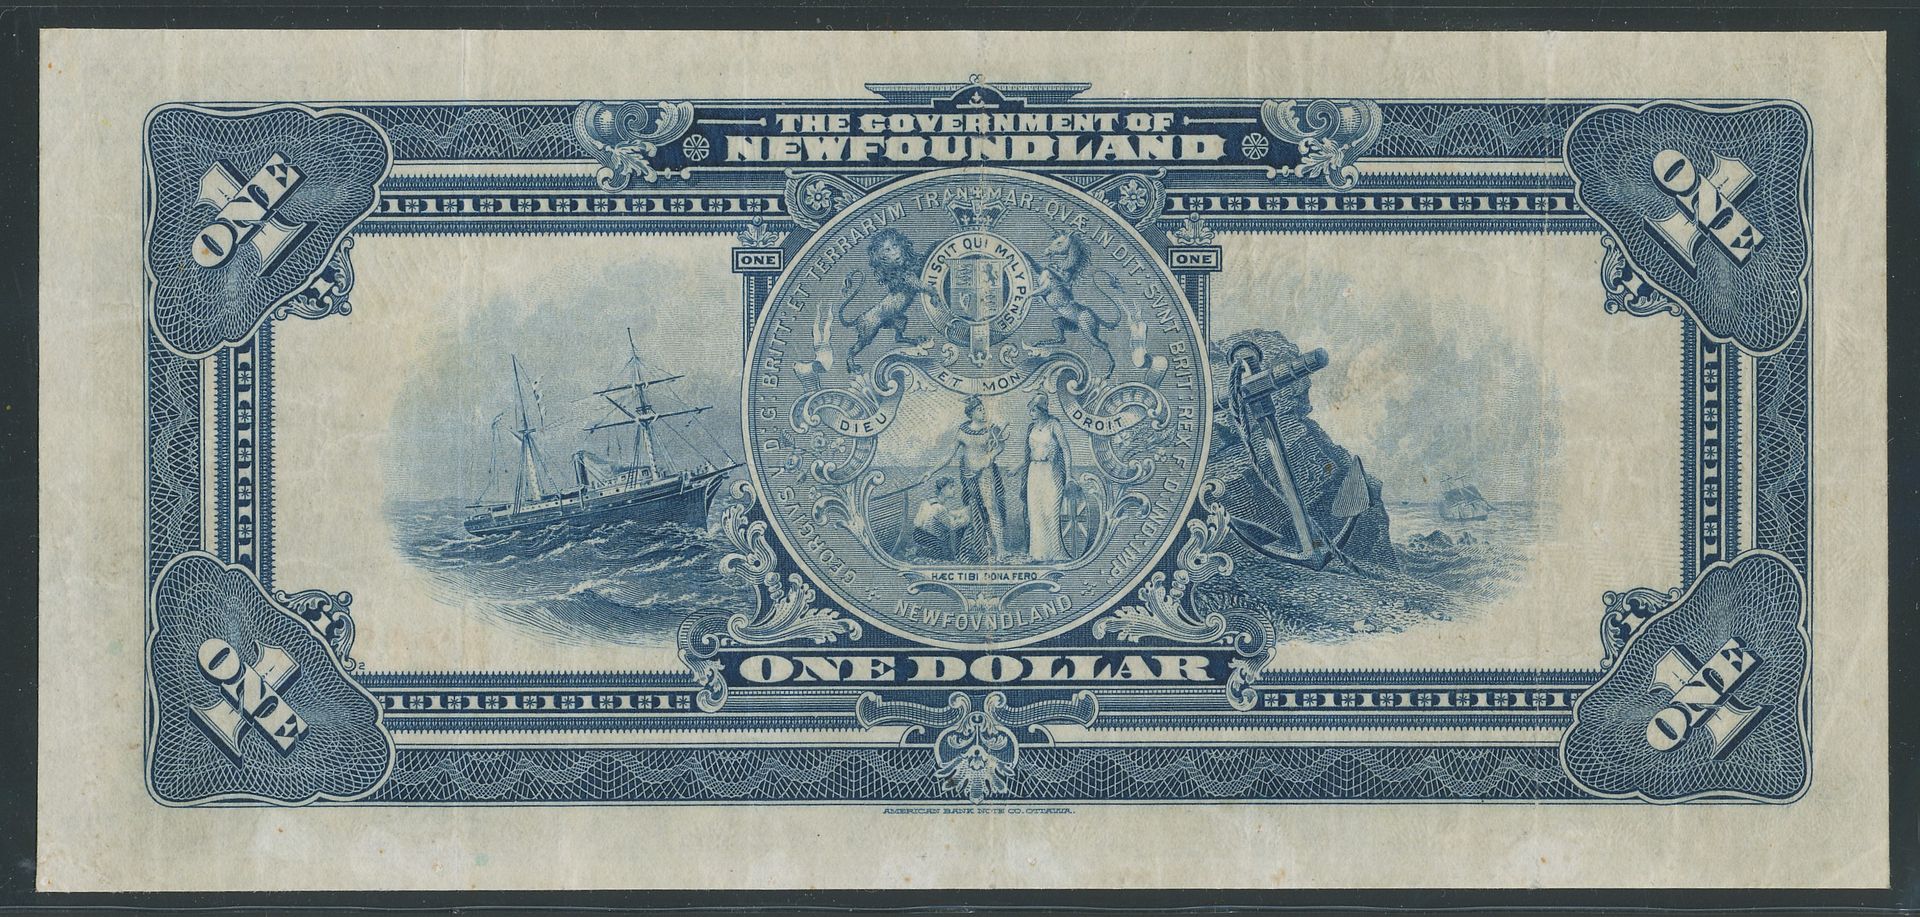 Банкноты 1 доллар 1910 ньюфаундленд. Американская купюра 1 доллар. 2 Долларовая купюра 1800. Старые американские банкноты. Редкие бумажные купюры